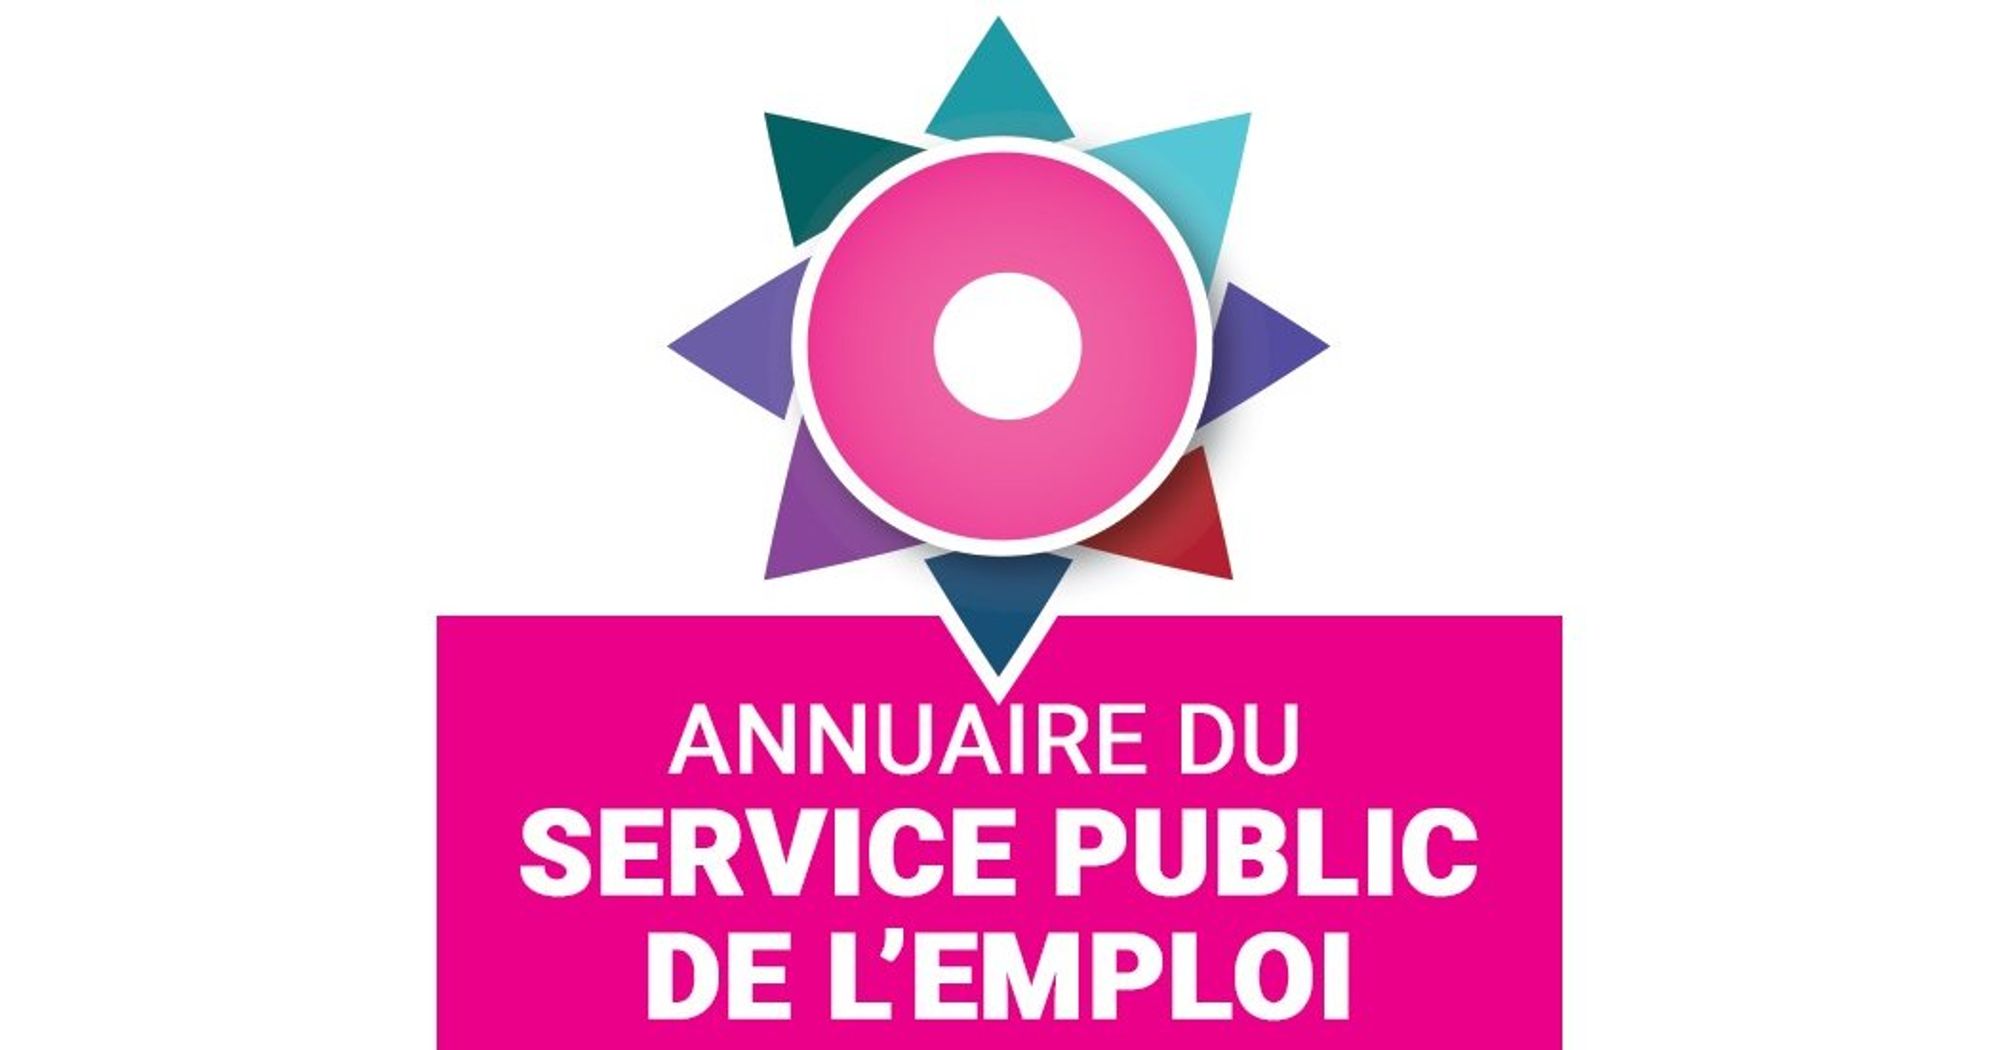 Annuaire du service public de l'emploi – Ministère du Travail, du Plein emploi et de l'Insertion